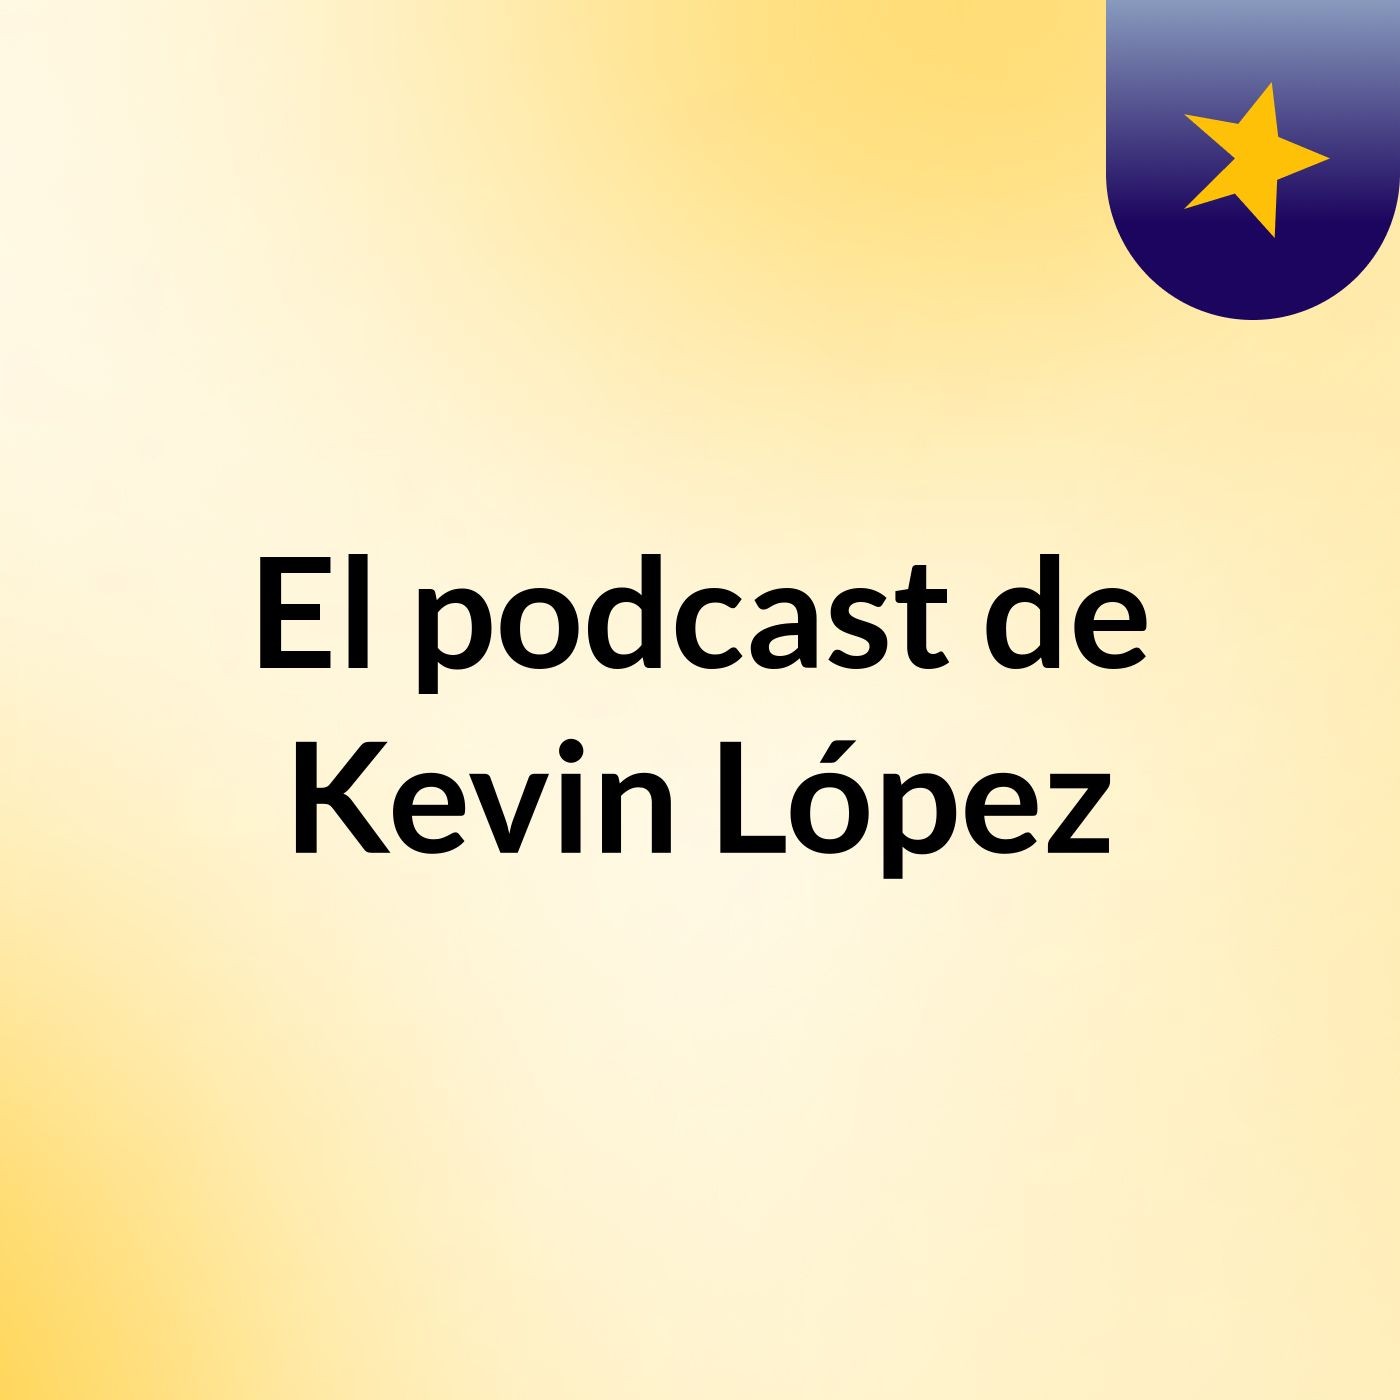 El podcast de Kevin López